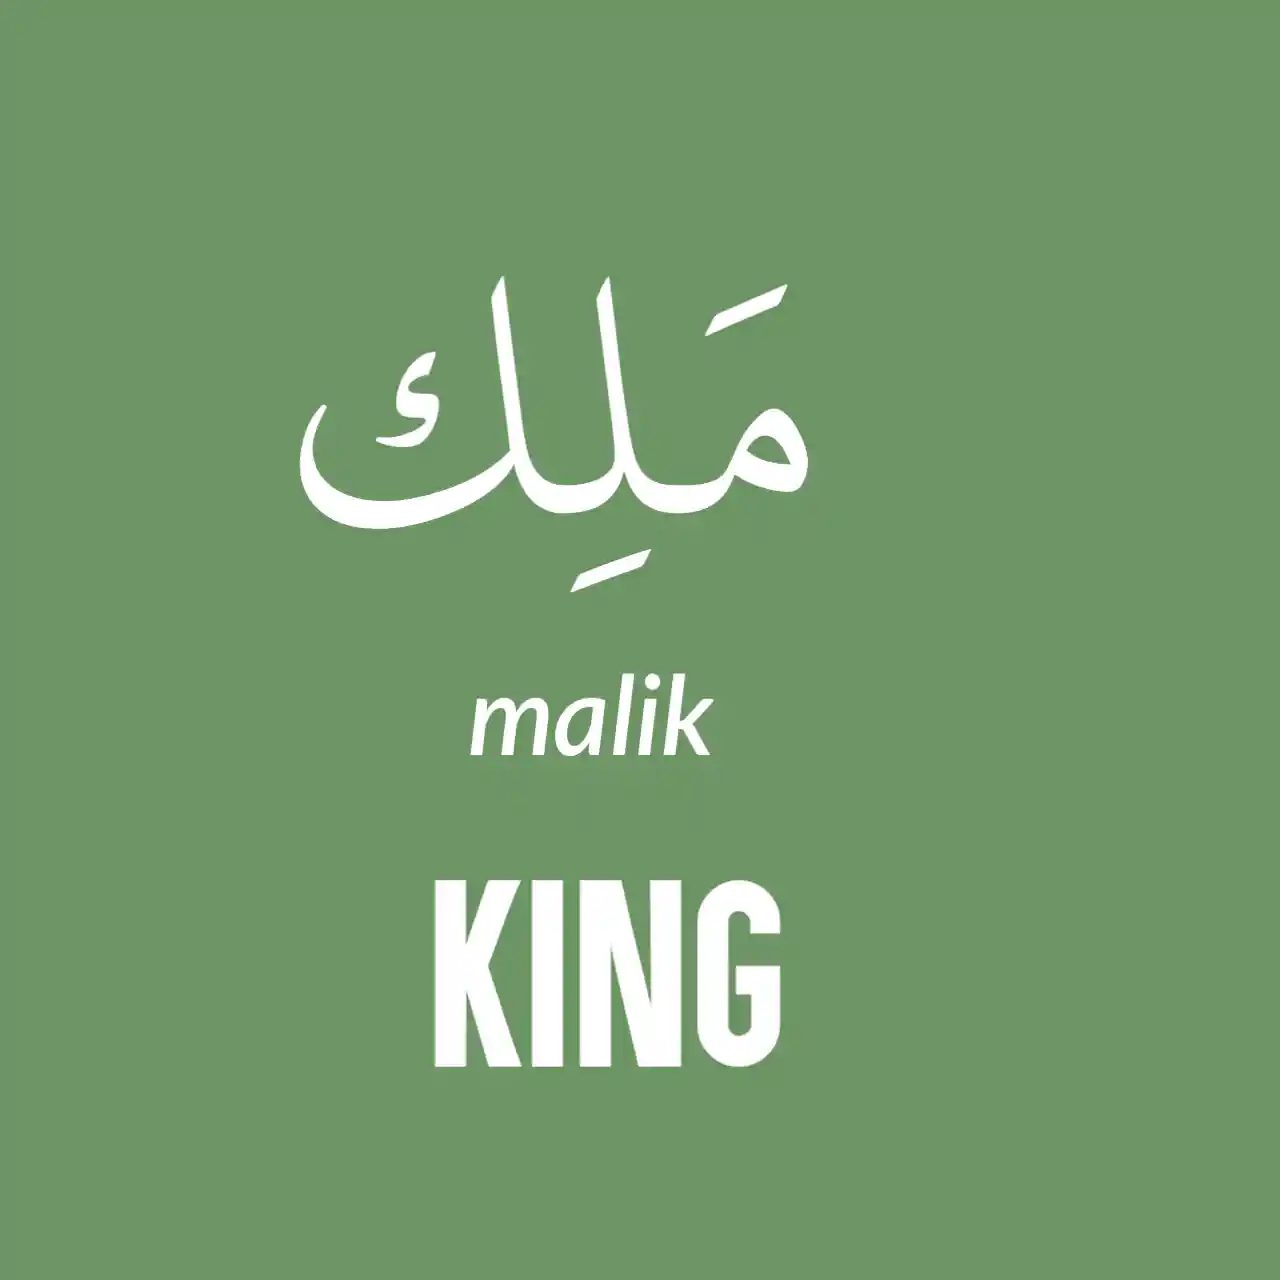 King In Arabic